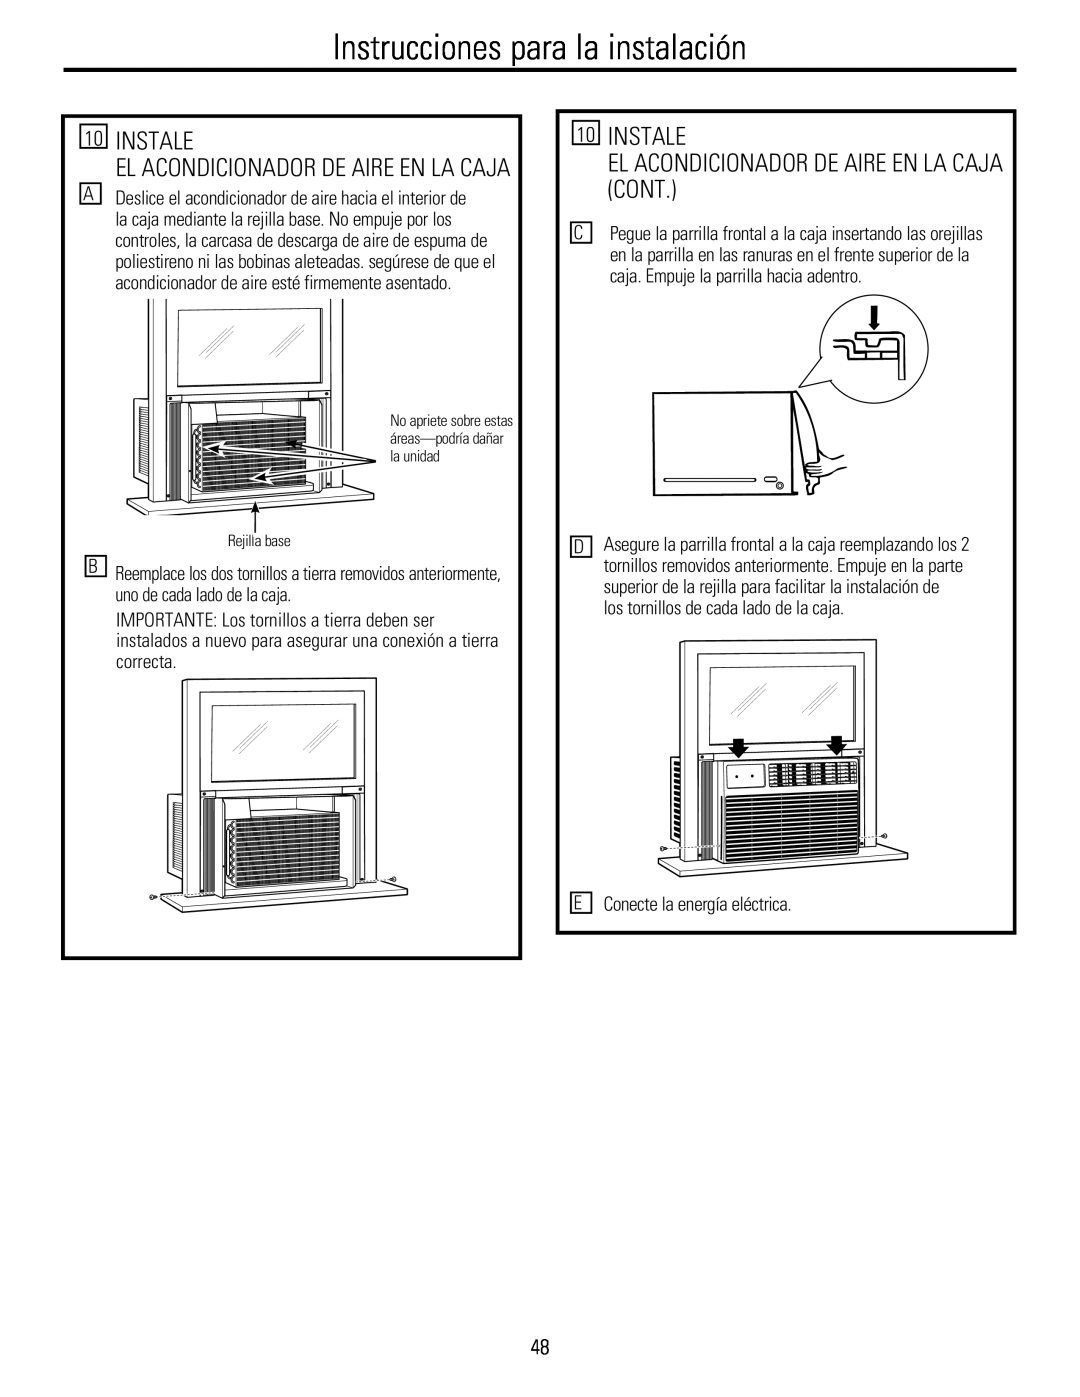 GE 880 installation instructions 10INSTALE, El Acondicionador De Aire En La Caja Cont, Instrucciones para la instalación 